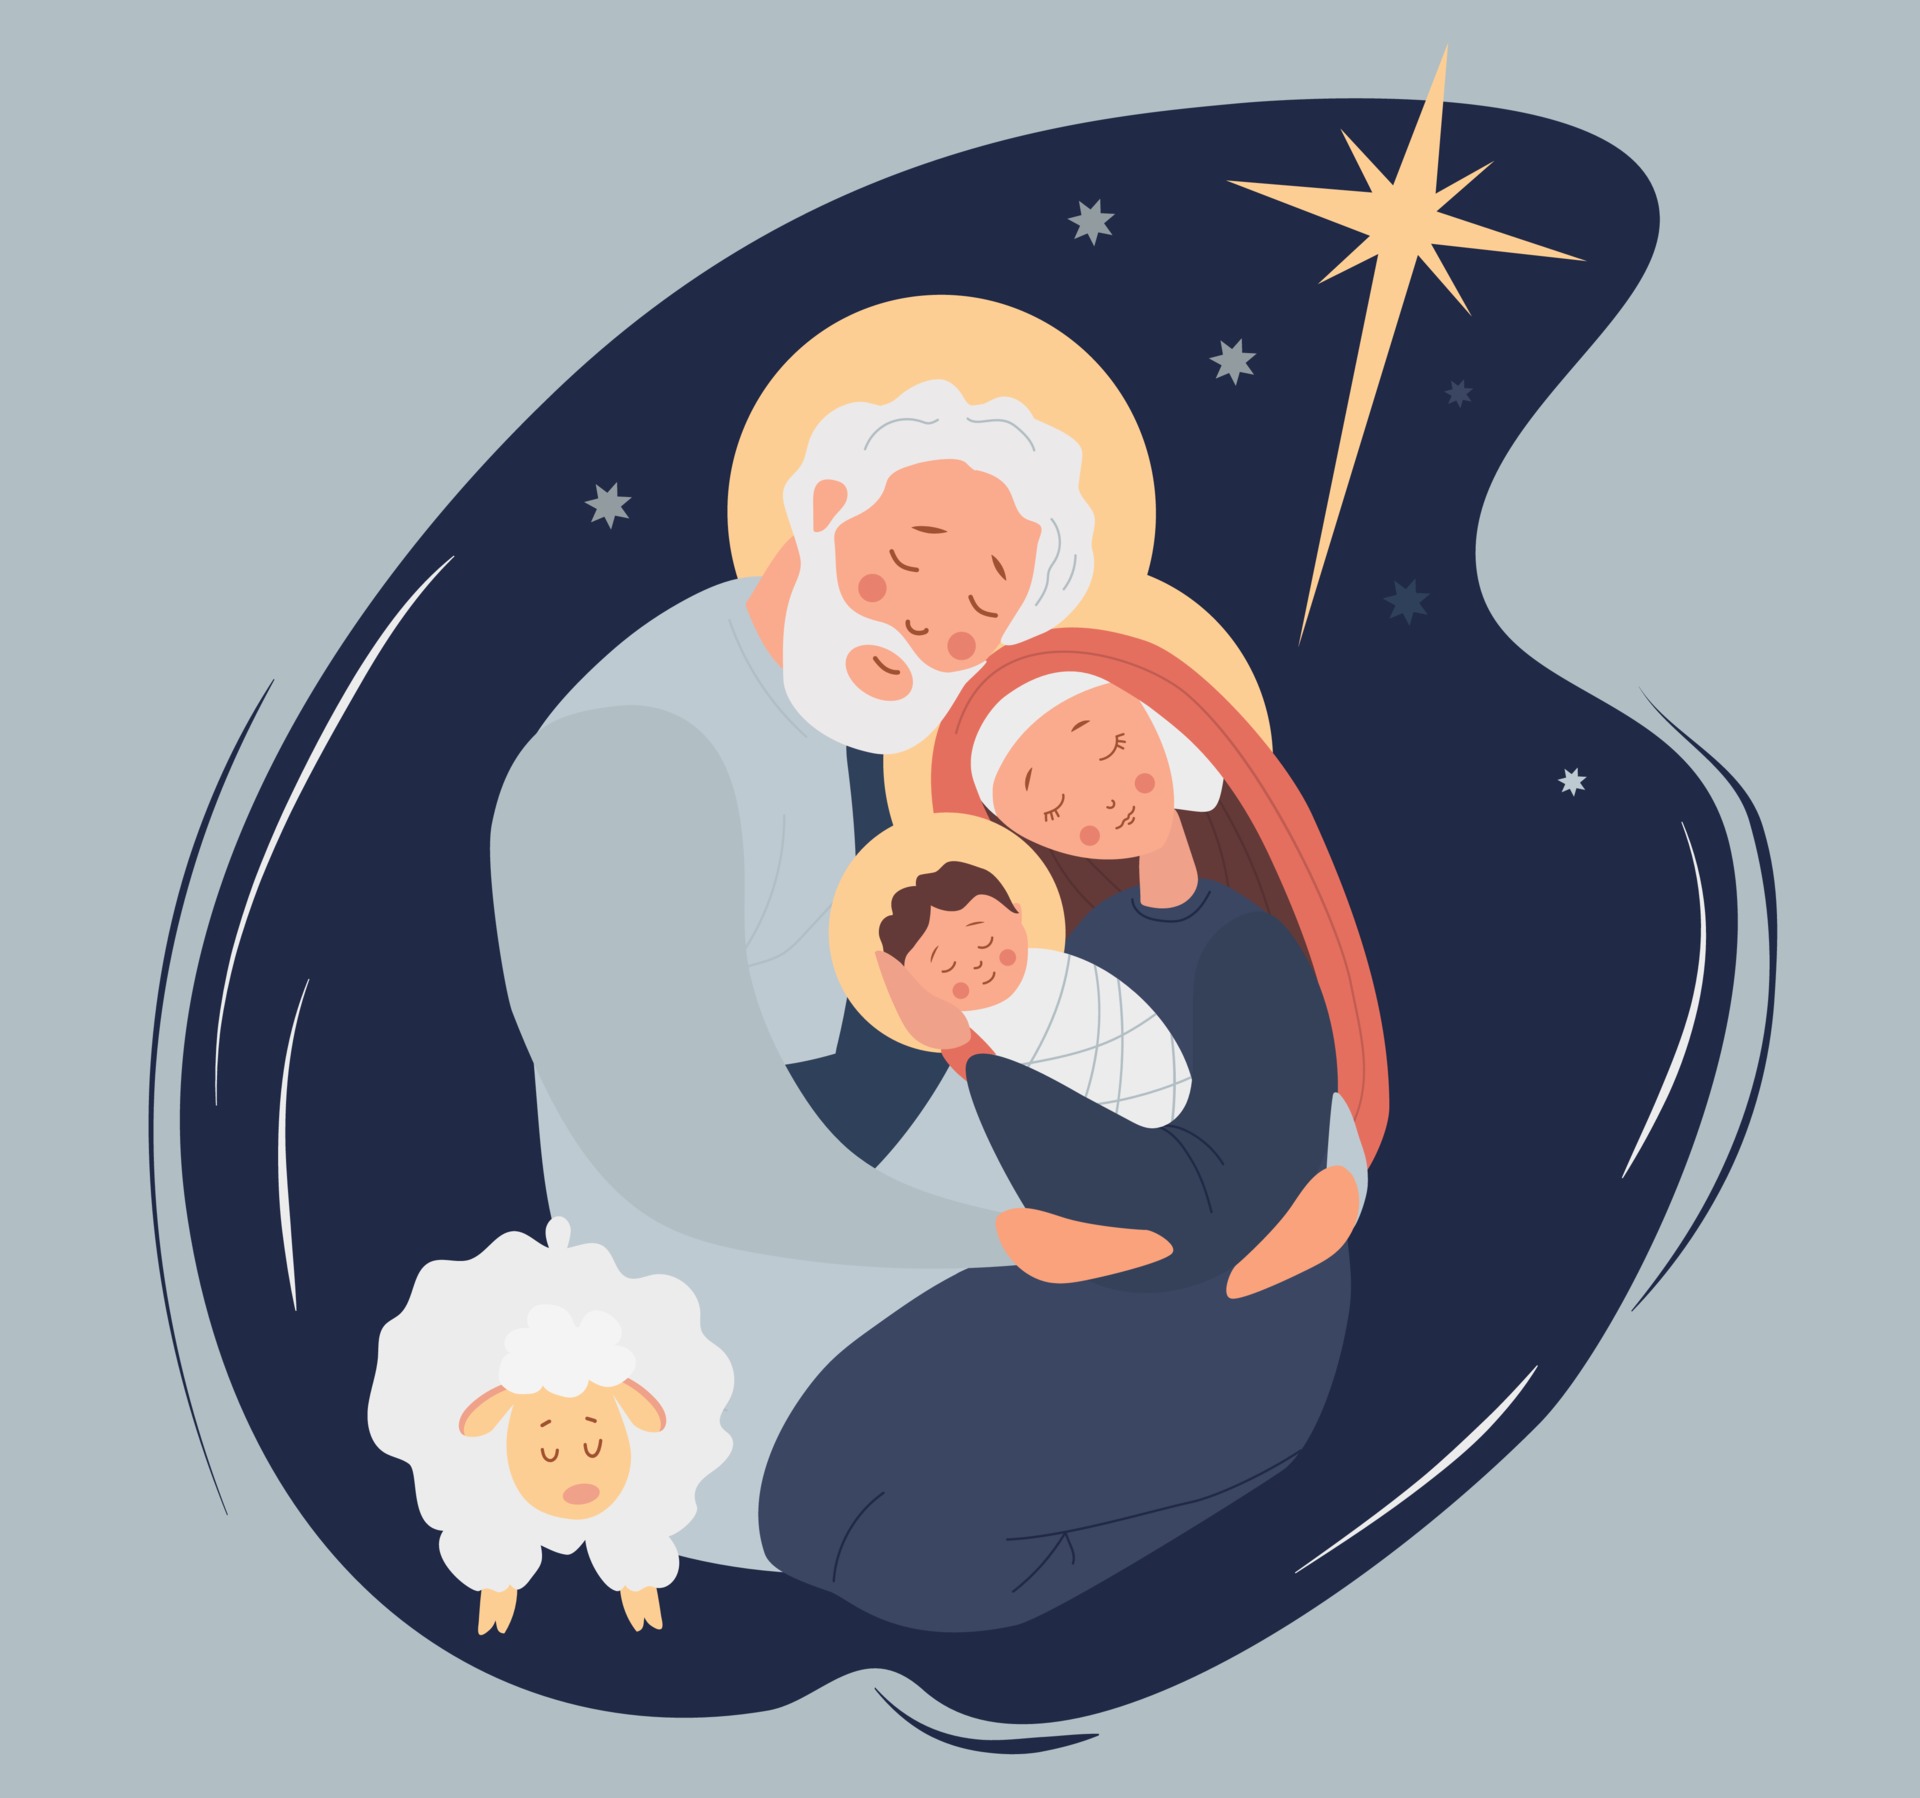 feliz Natal. sagrada família virgem maria e joseph nascimento do bebê  salvador jesus cristo em uma manjedoura perto das ovelhas. noite sagrada e  a estrela de Belém. ilustração vetorial sobre fundo azul